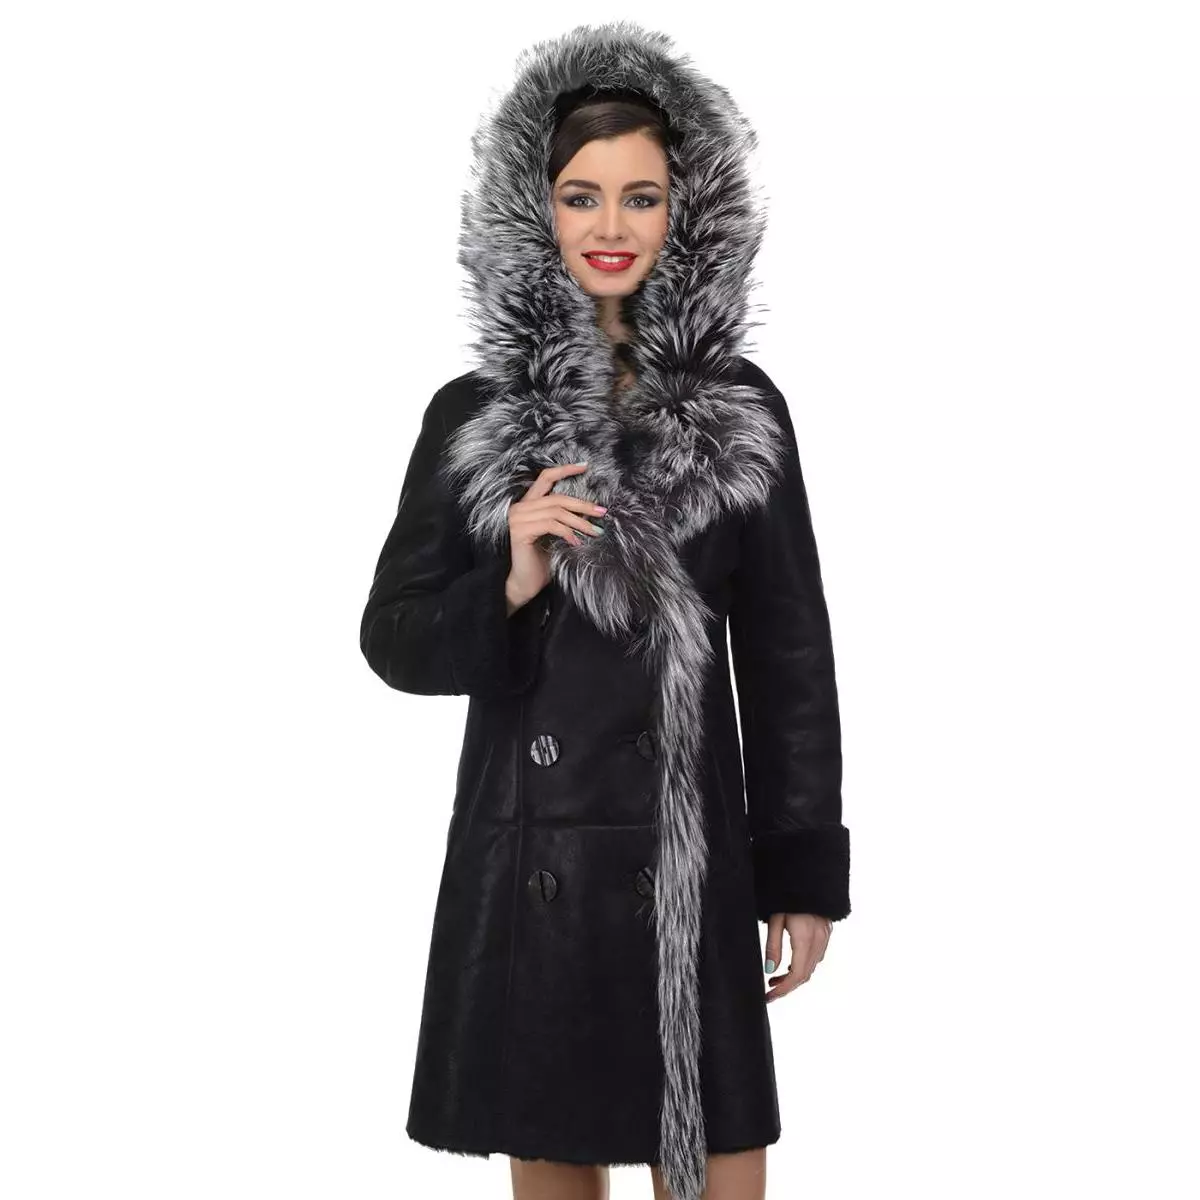 Calyaev's Coat (50 fotos): models de dona de Fur Factory Kalyaev, crítiques 382_27